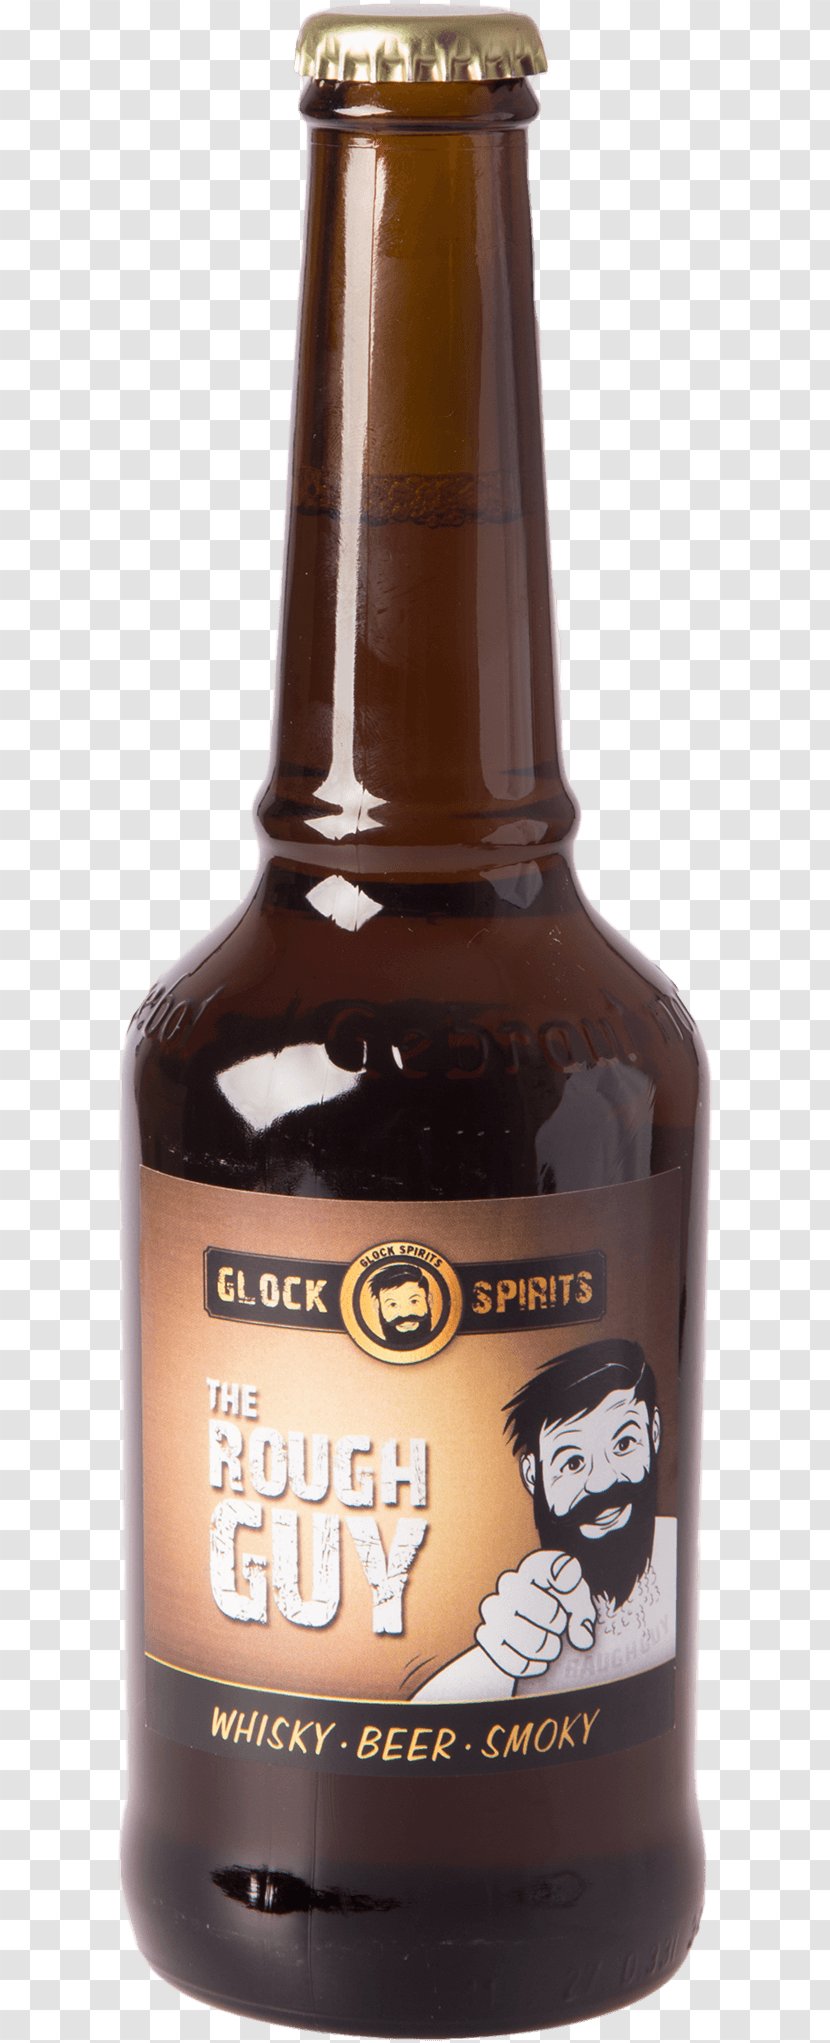 Beer Bottle Distilled Beverage Bell's Brewery Ale Transparent PNG